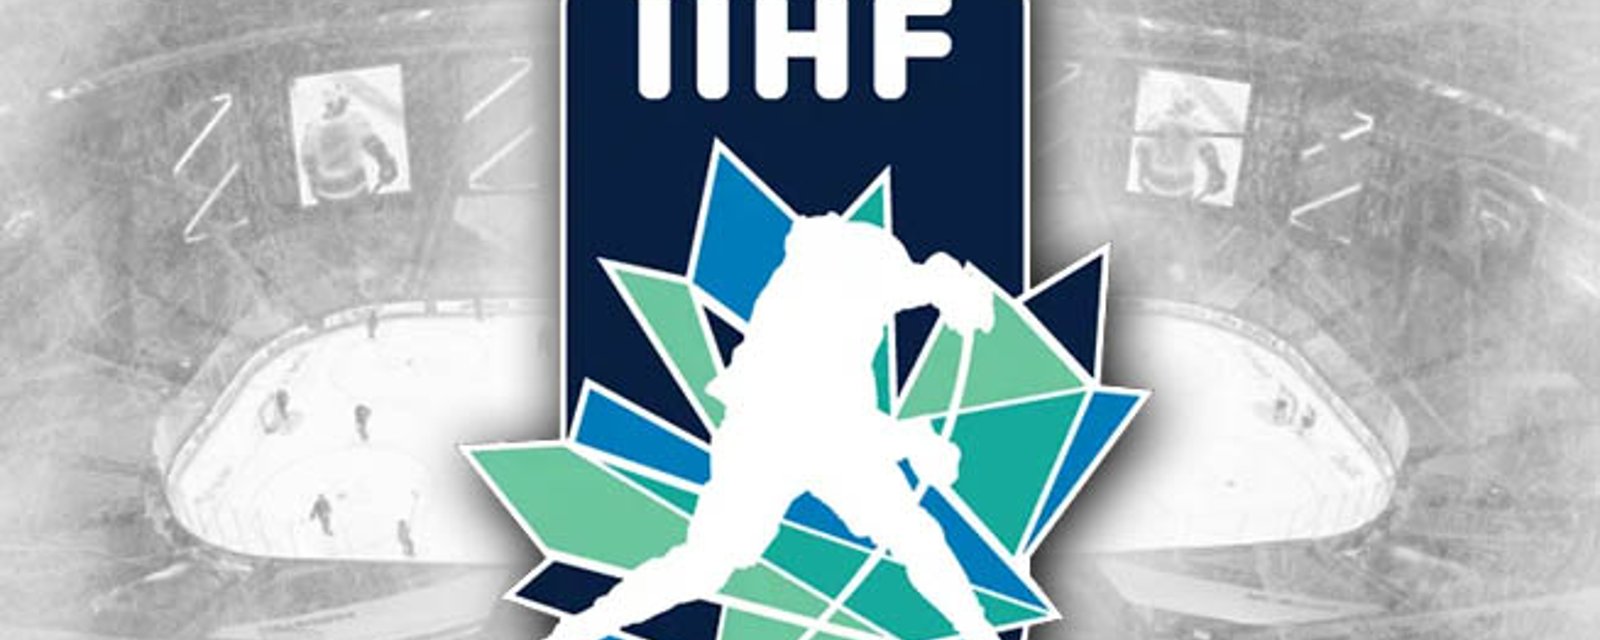 L'IIHF rend son verdict concernant la présence des russes sur la scène internationale